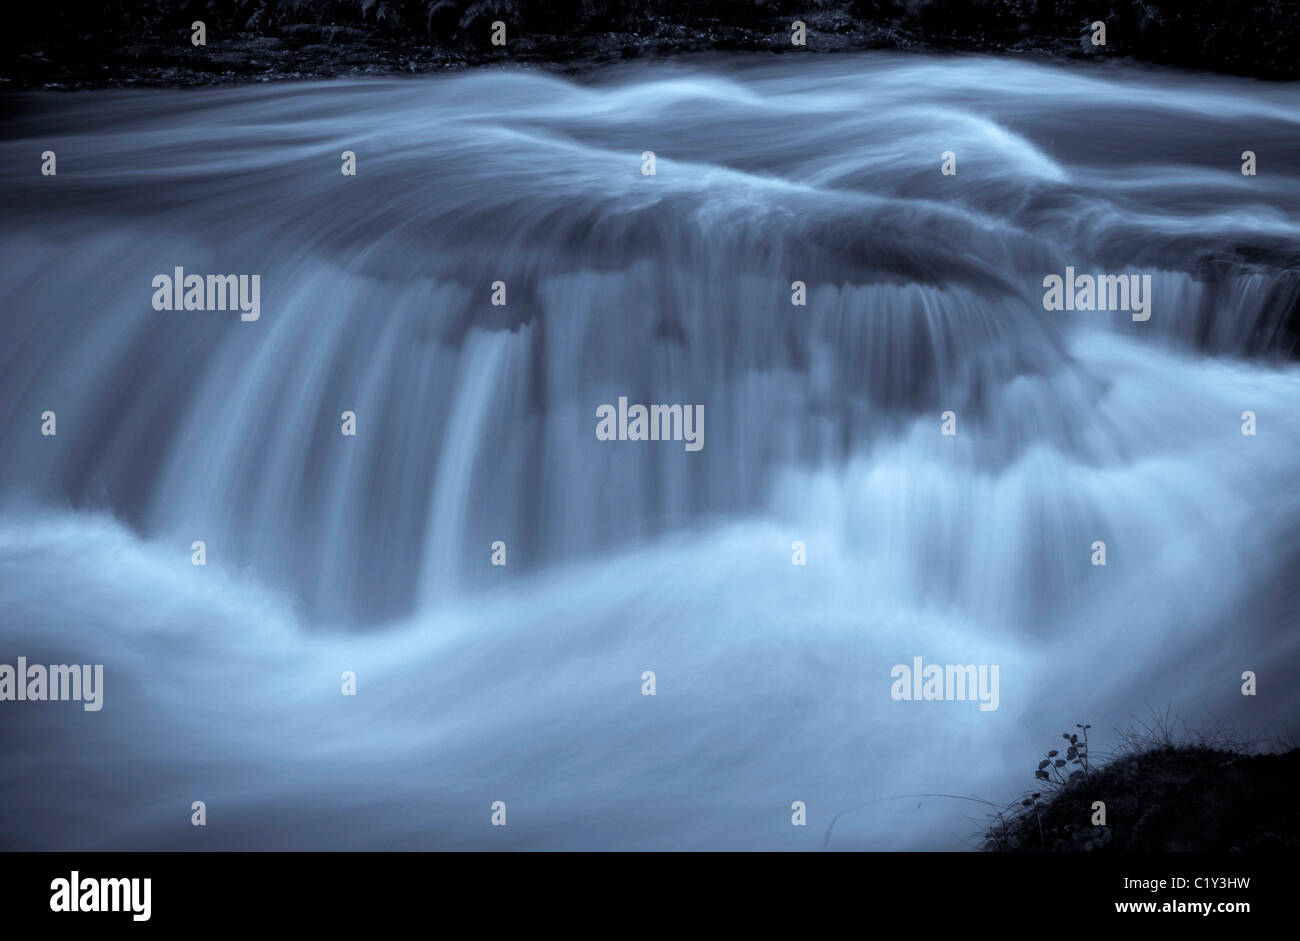 einem schnell fließenden Fluss in Wales in der Nähe von ystadfellte.blue getönten image.copy space.landscape format Stockfoto